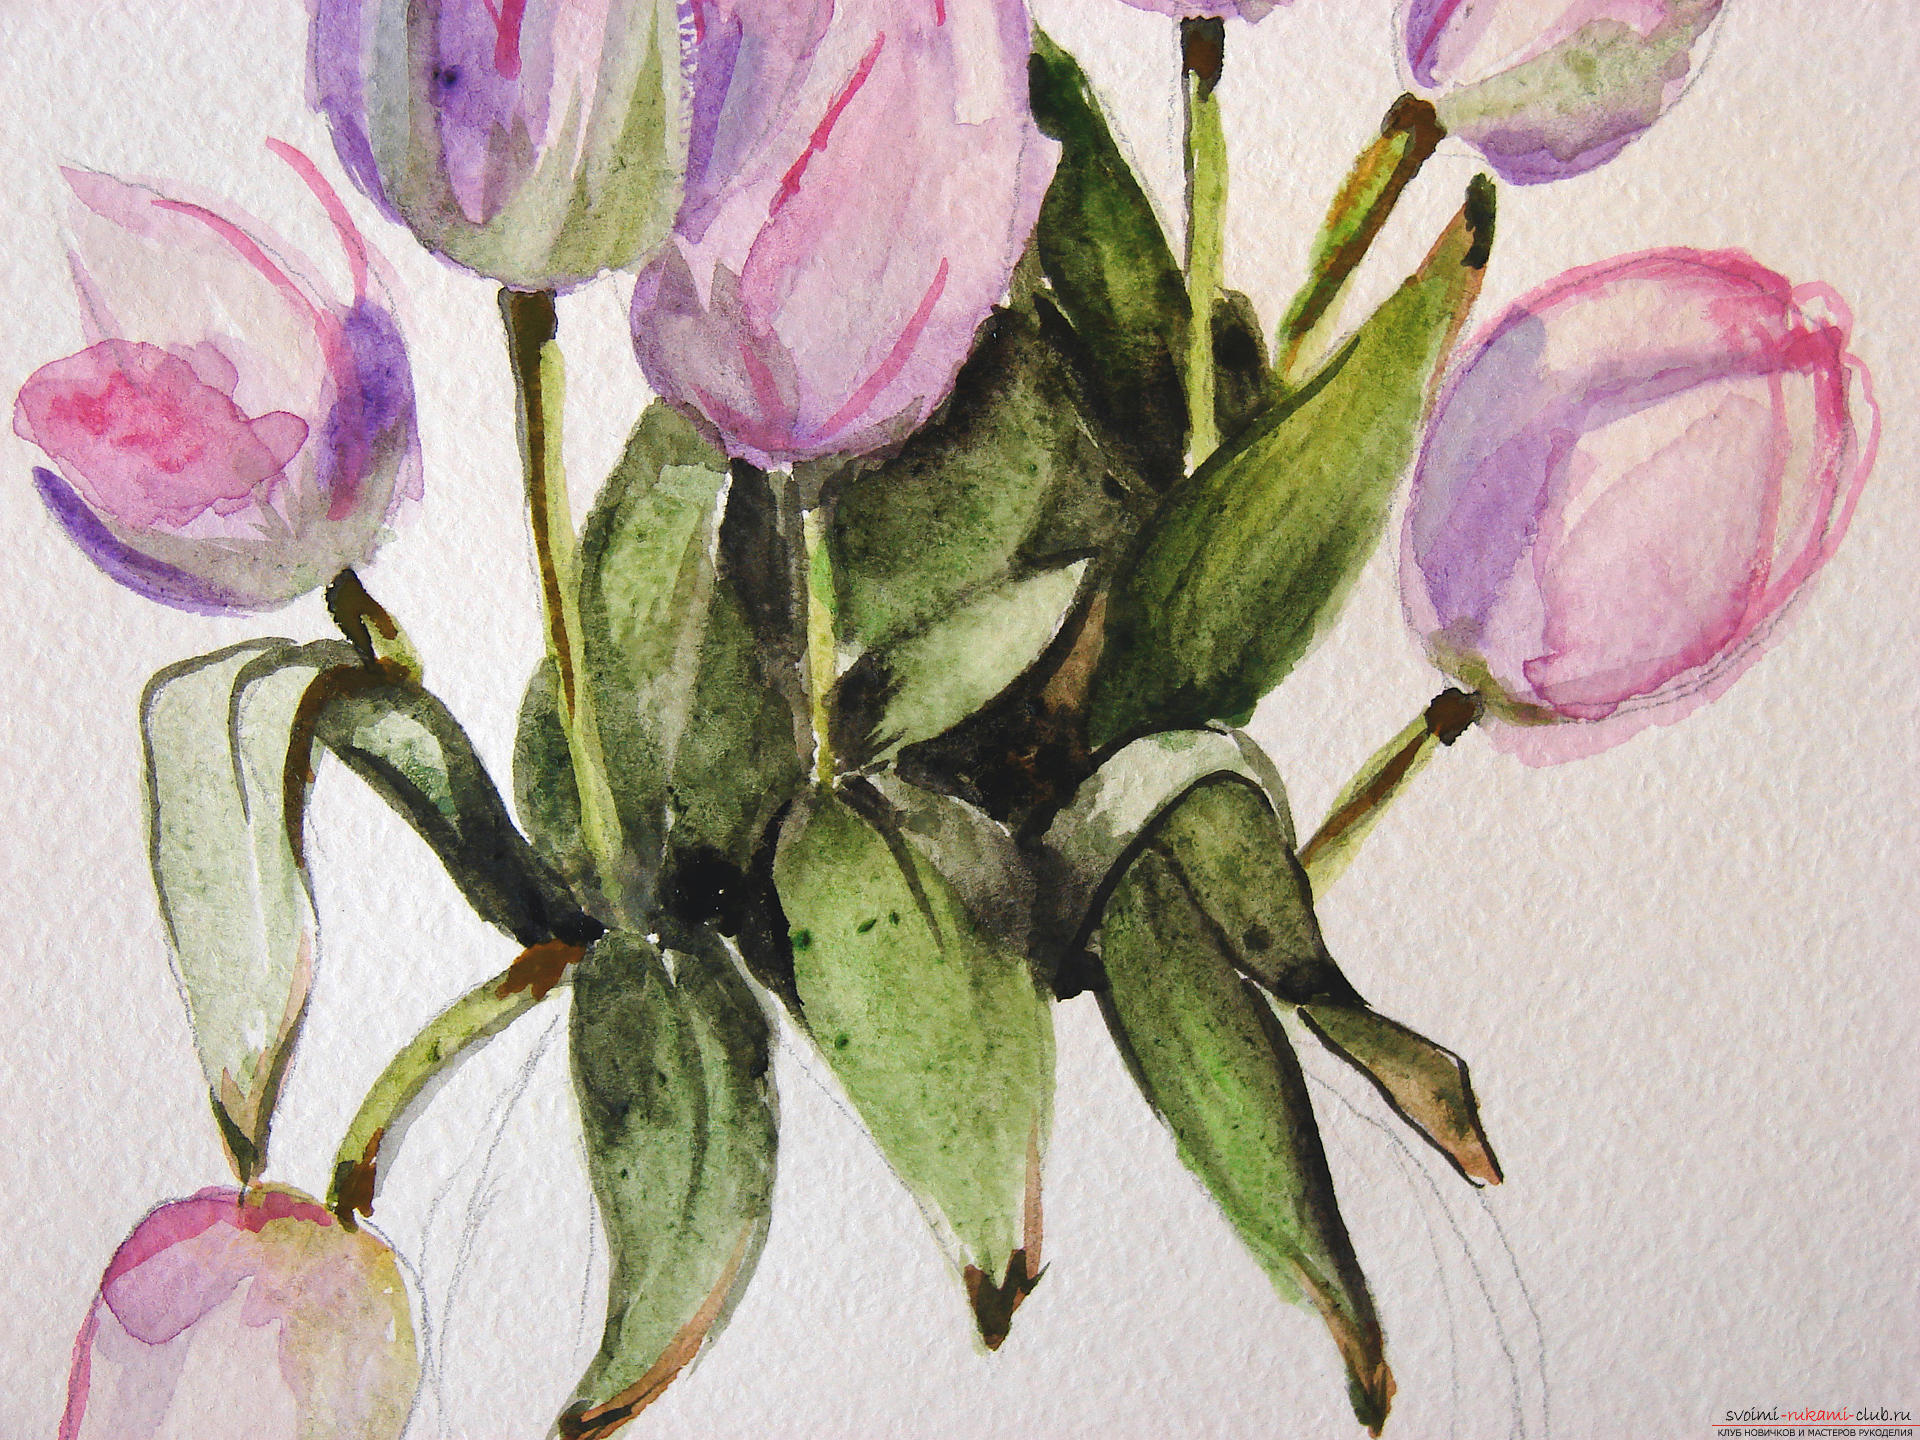 Мастер-класс по рисованию с фото научит как нарисовать цветы, подробно описав как рисуются тюльпаны поэтапно.. Фото №17